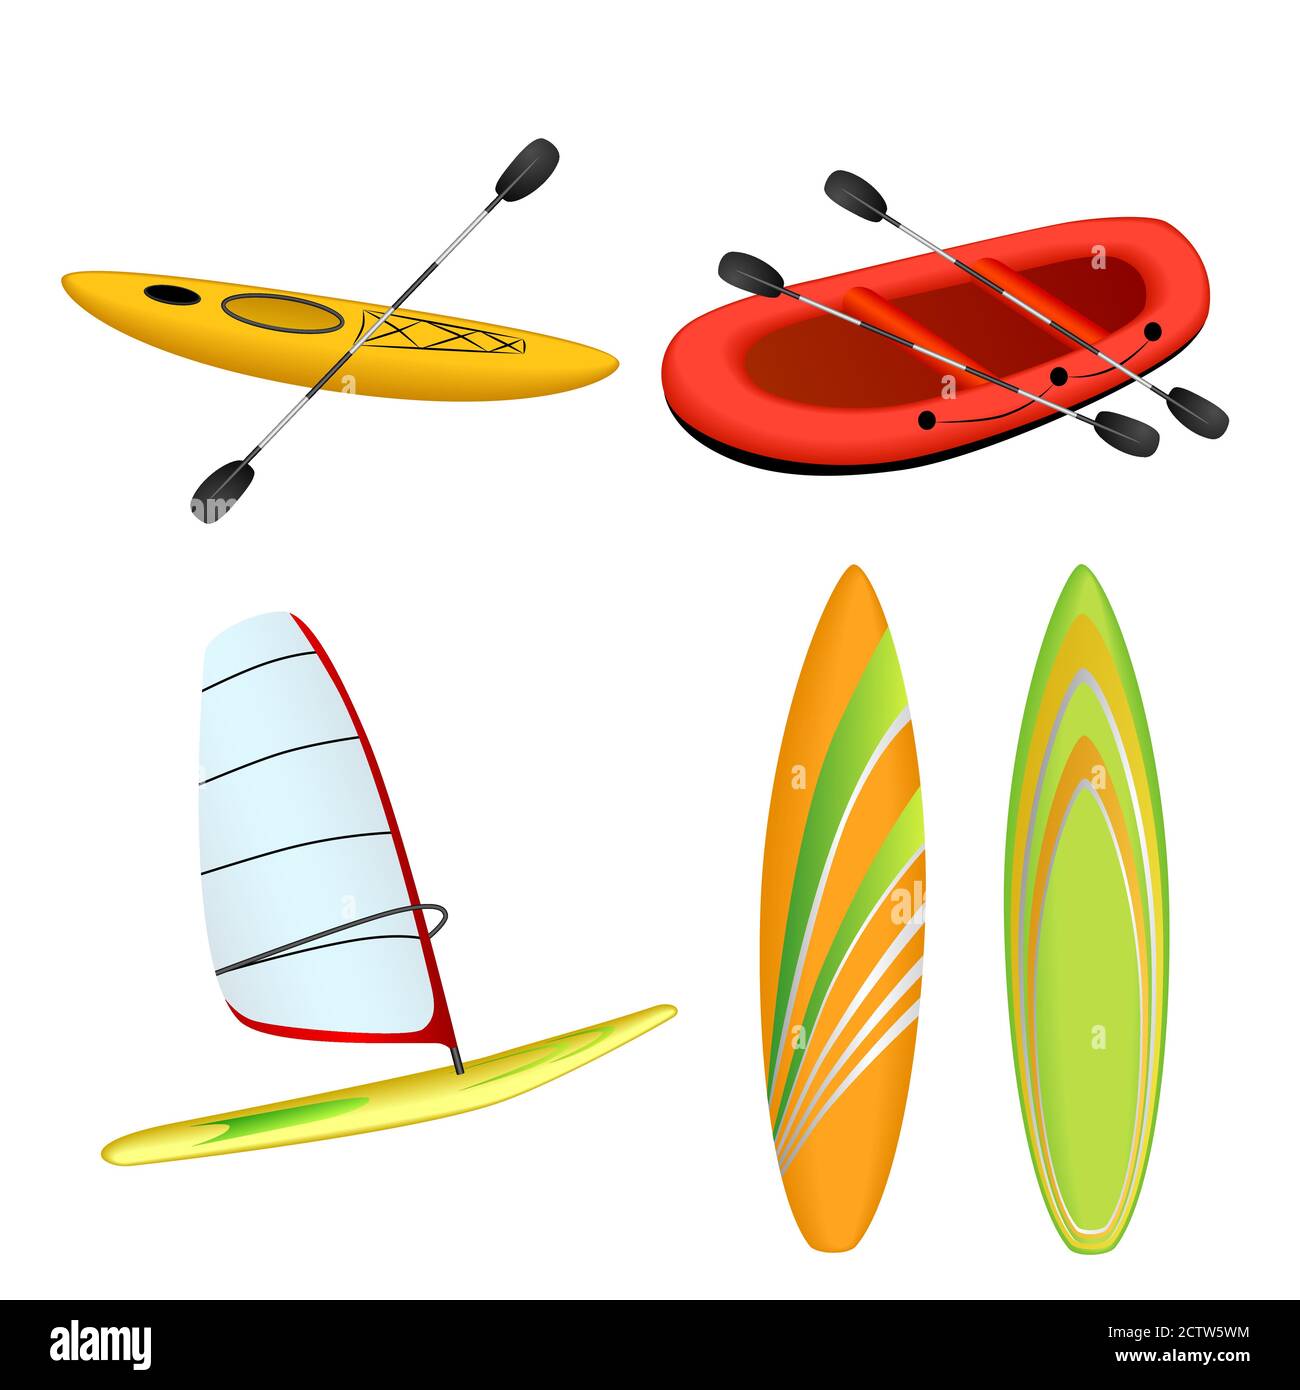 Deporte barco rojo rafting amarillo kayak naranja verde surf windsurf vector de ilustración aislado Ilustración del Vector